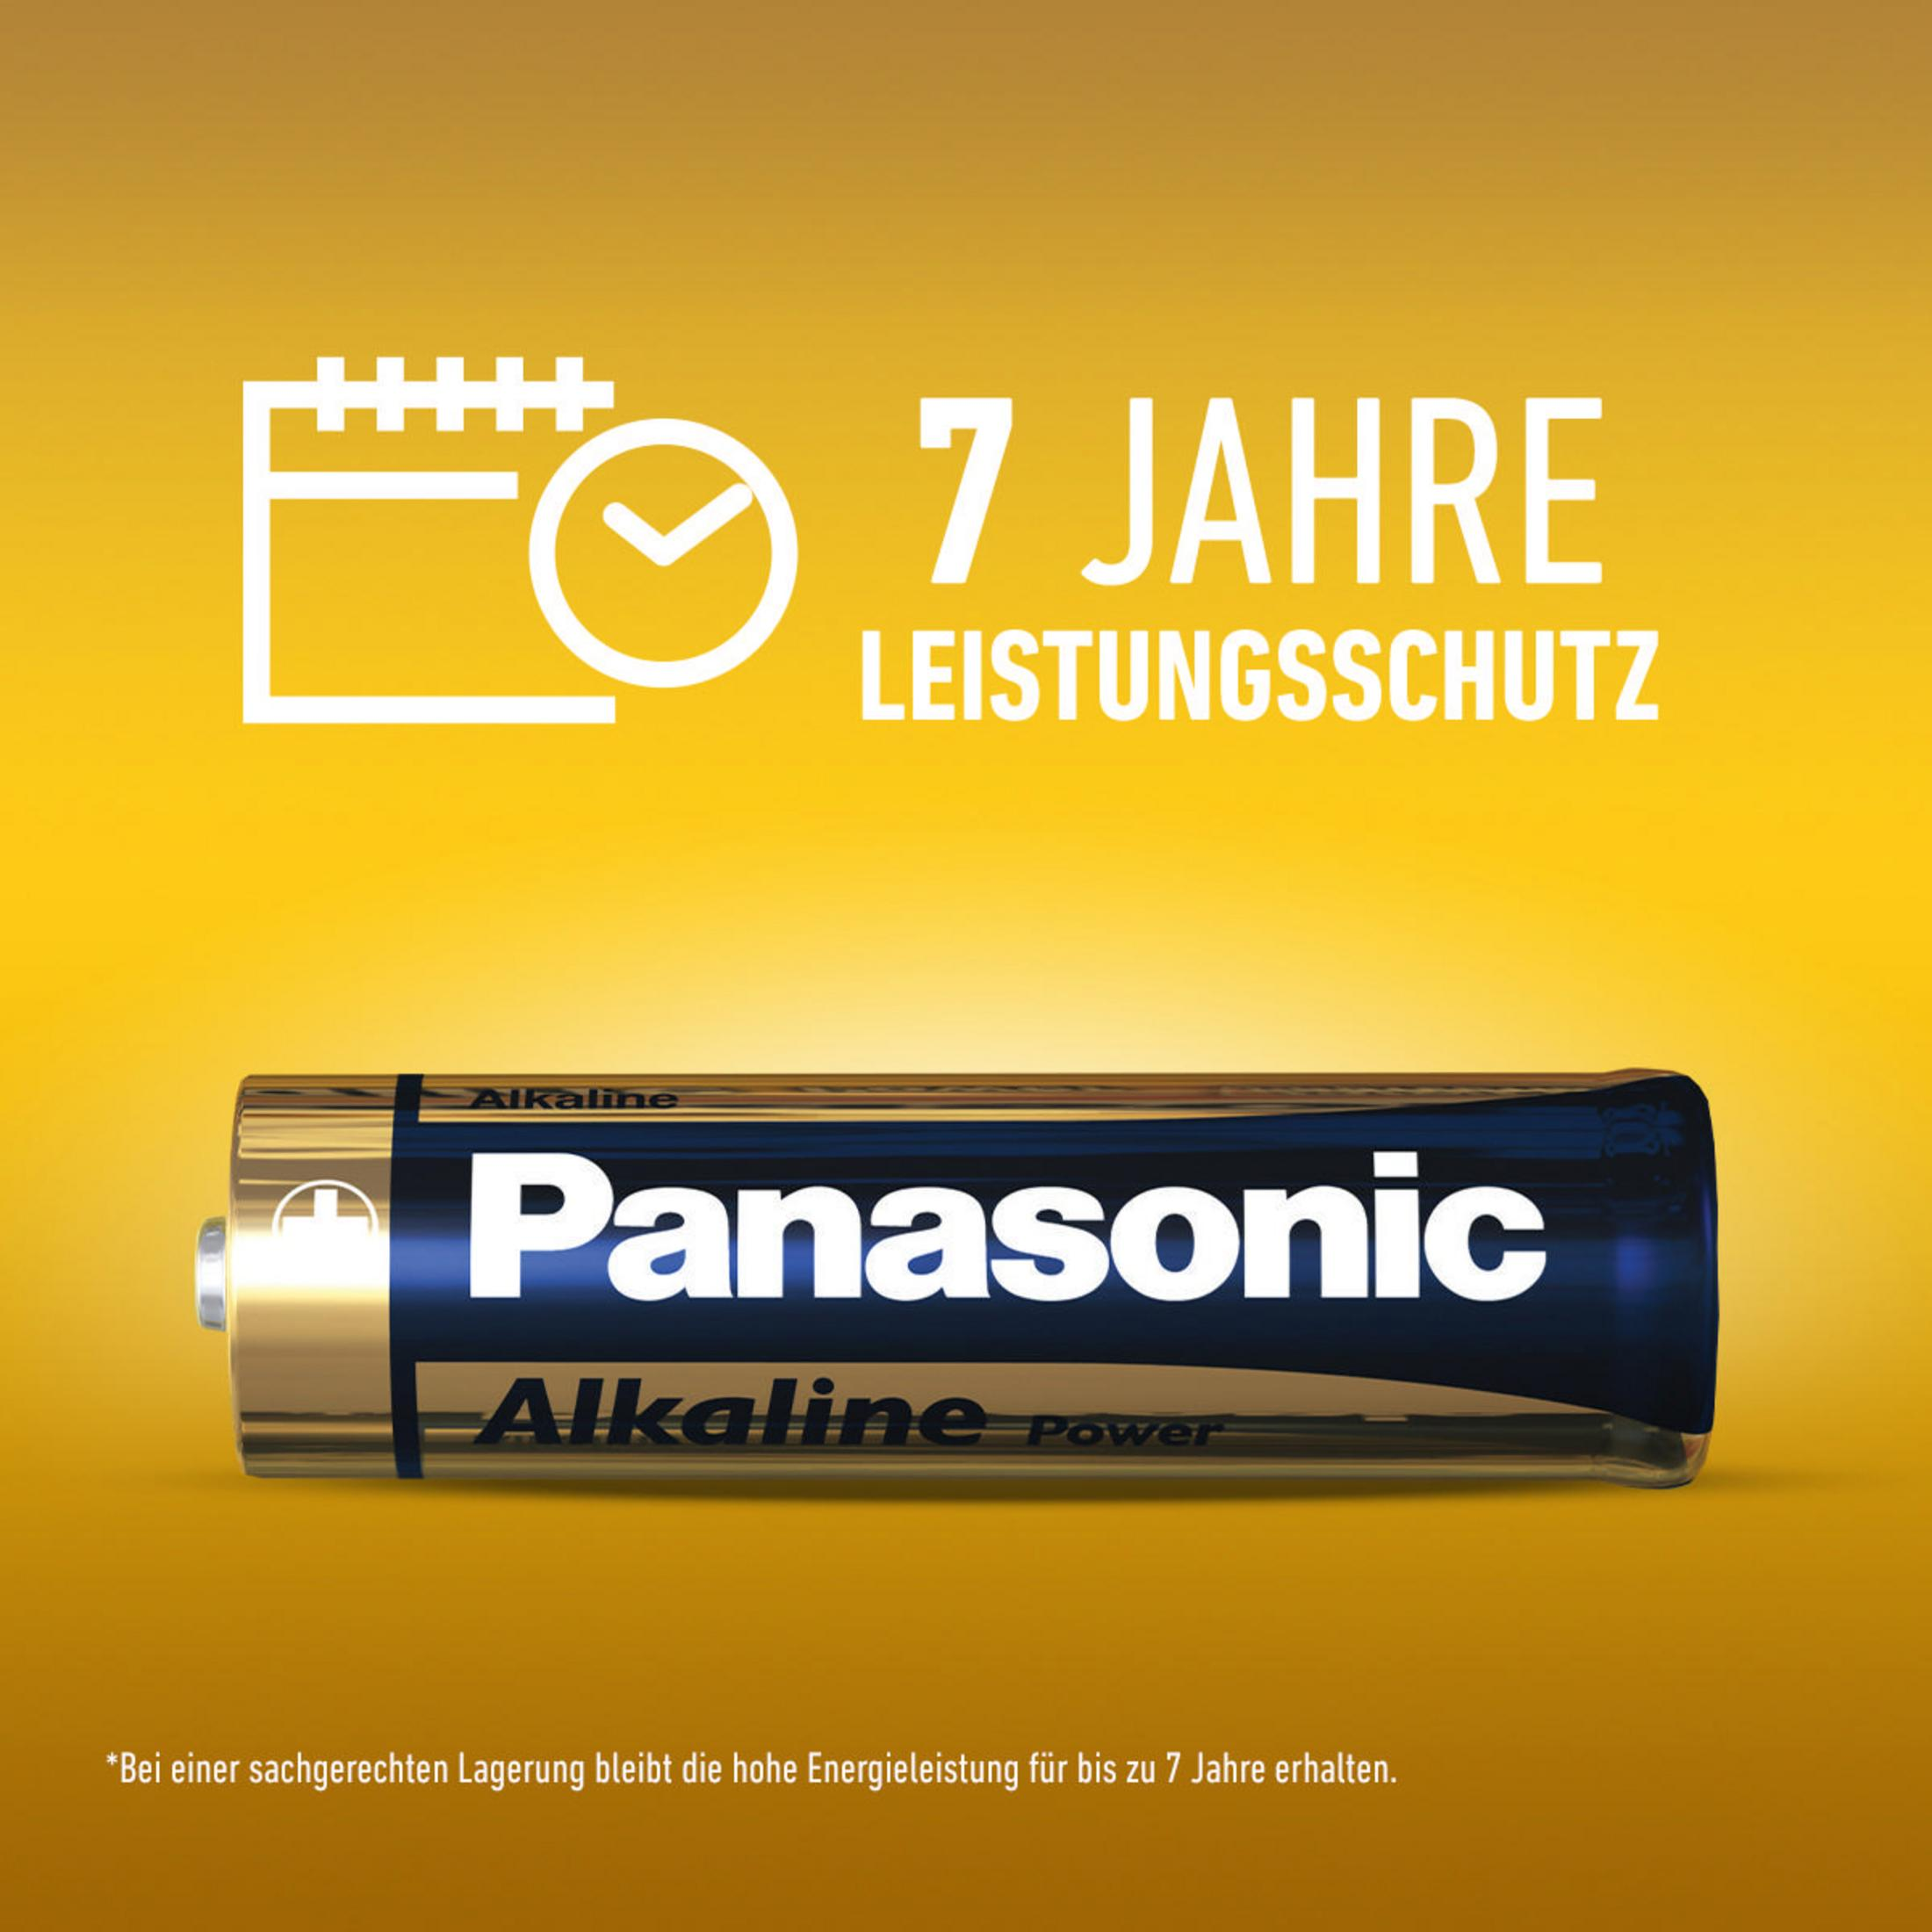 Alkaline, Batterie, Stück Volt 4 LR03APB/4BP 00261999 AAA 1.5 PANASONIC